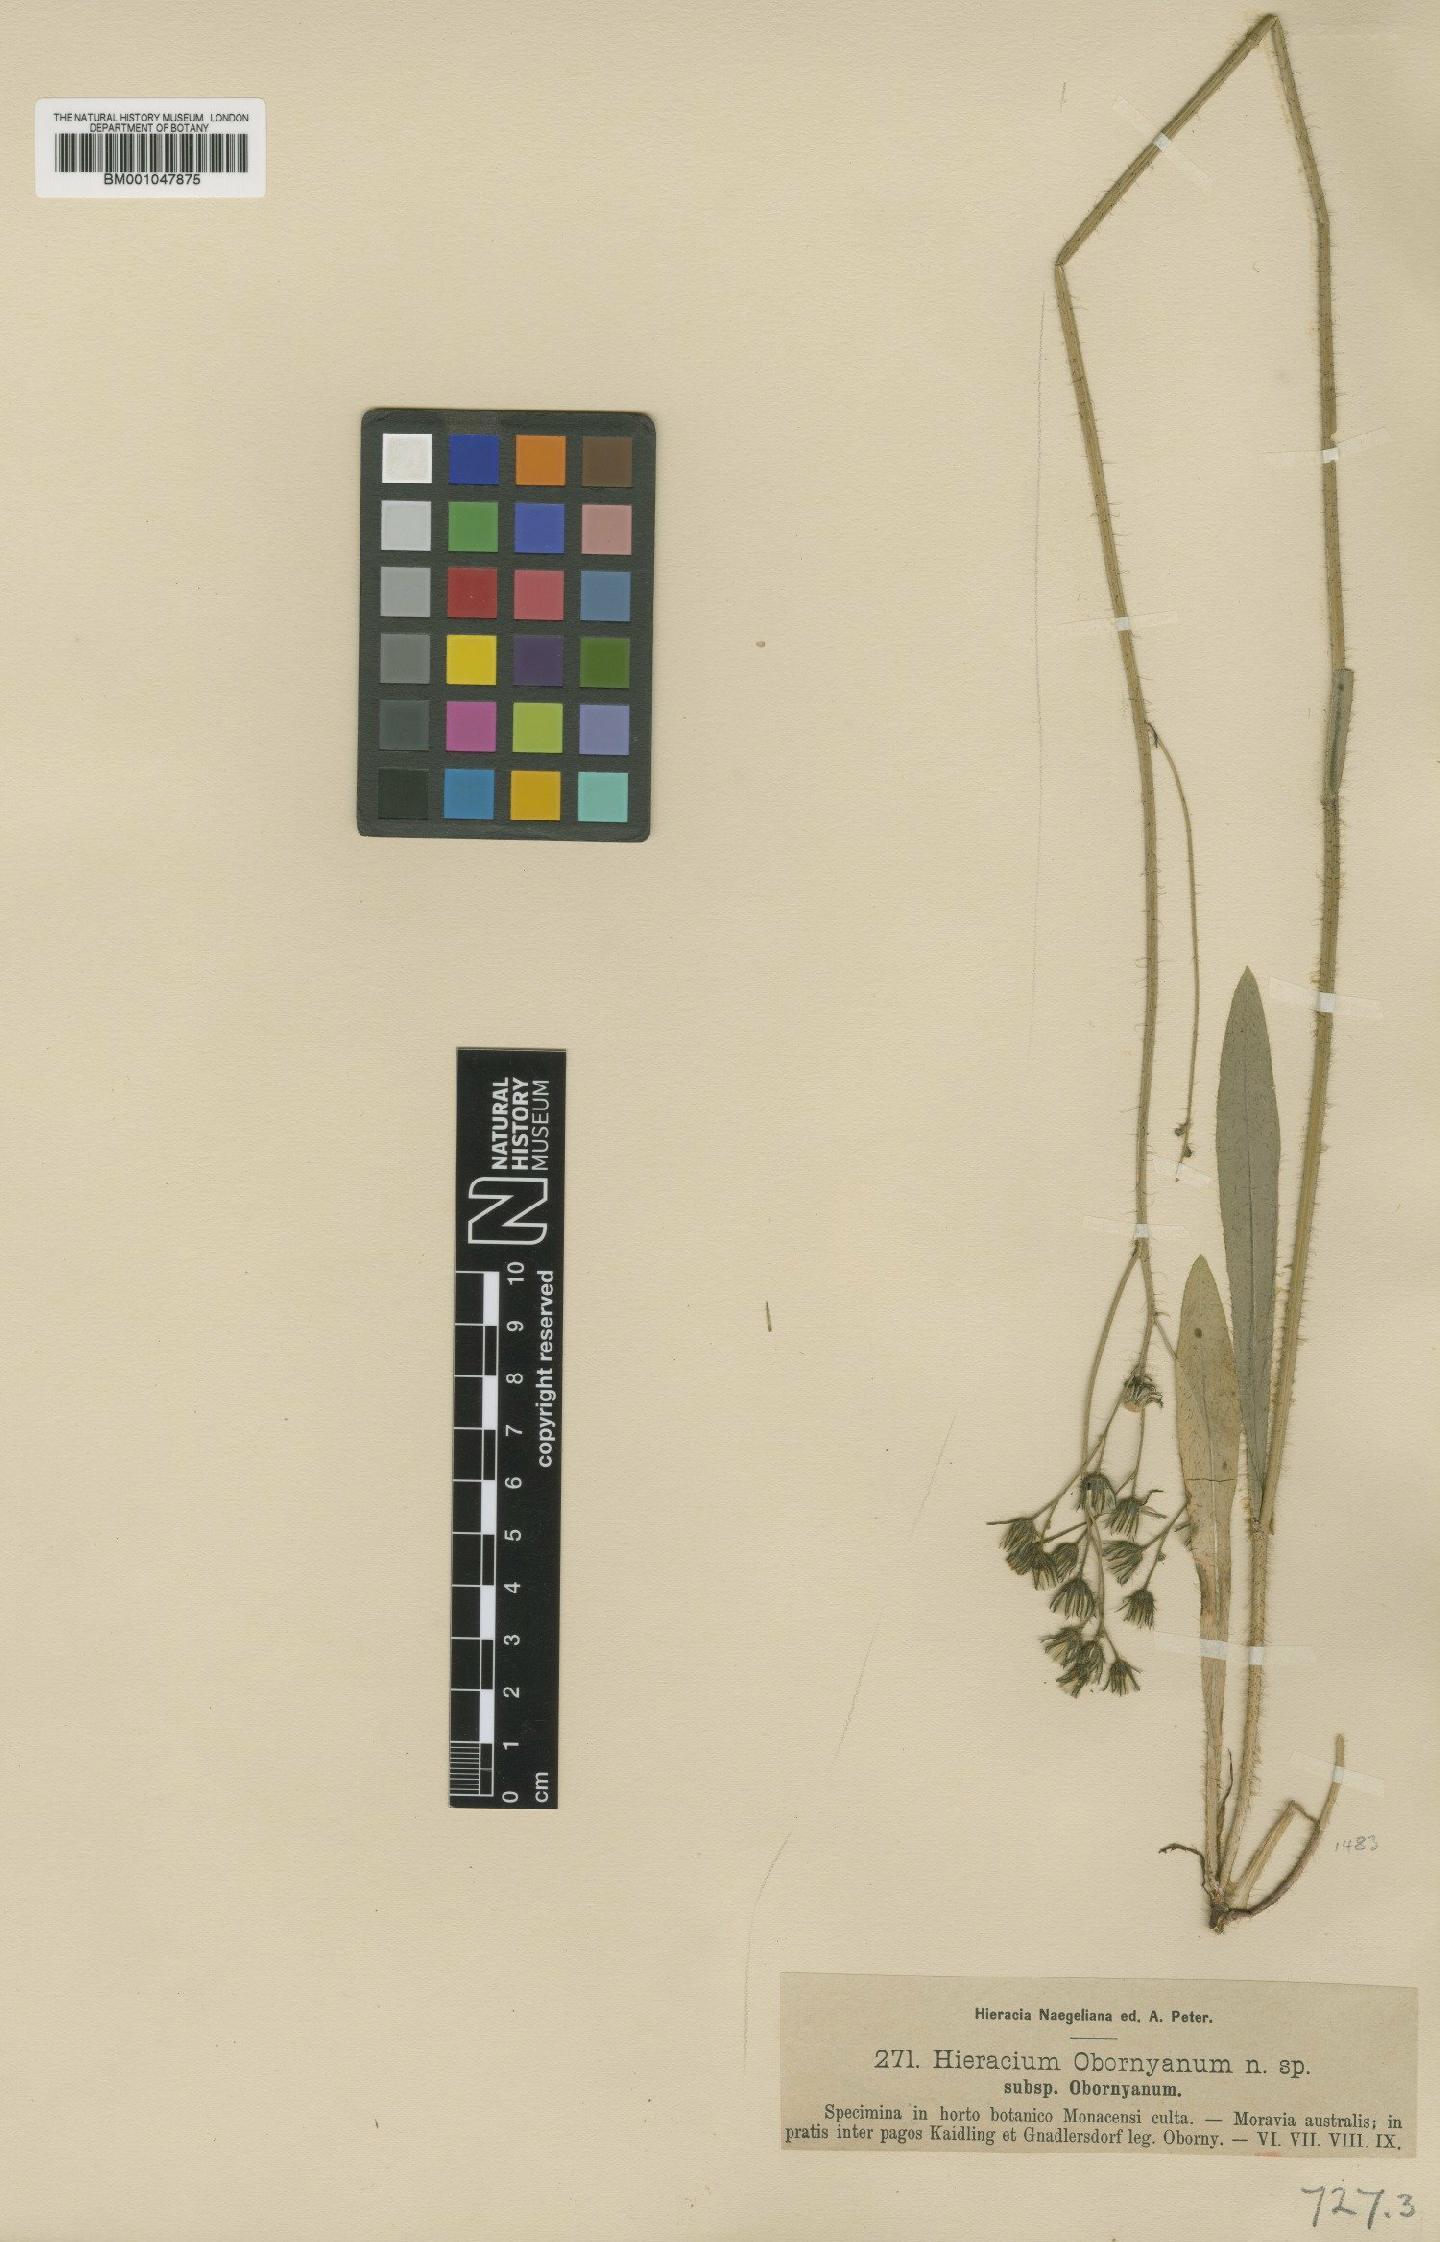 To NHMUK collection (Hieracium obornyanum Nägeli & Peter; Type; NHMUK:ecatalogue:2817587)